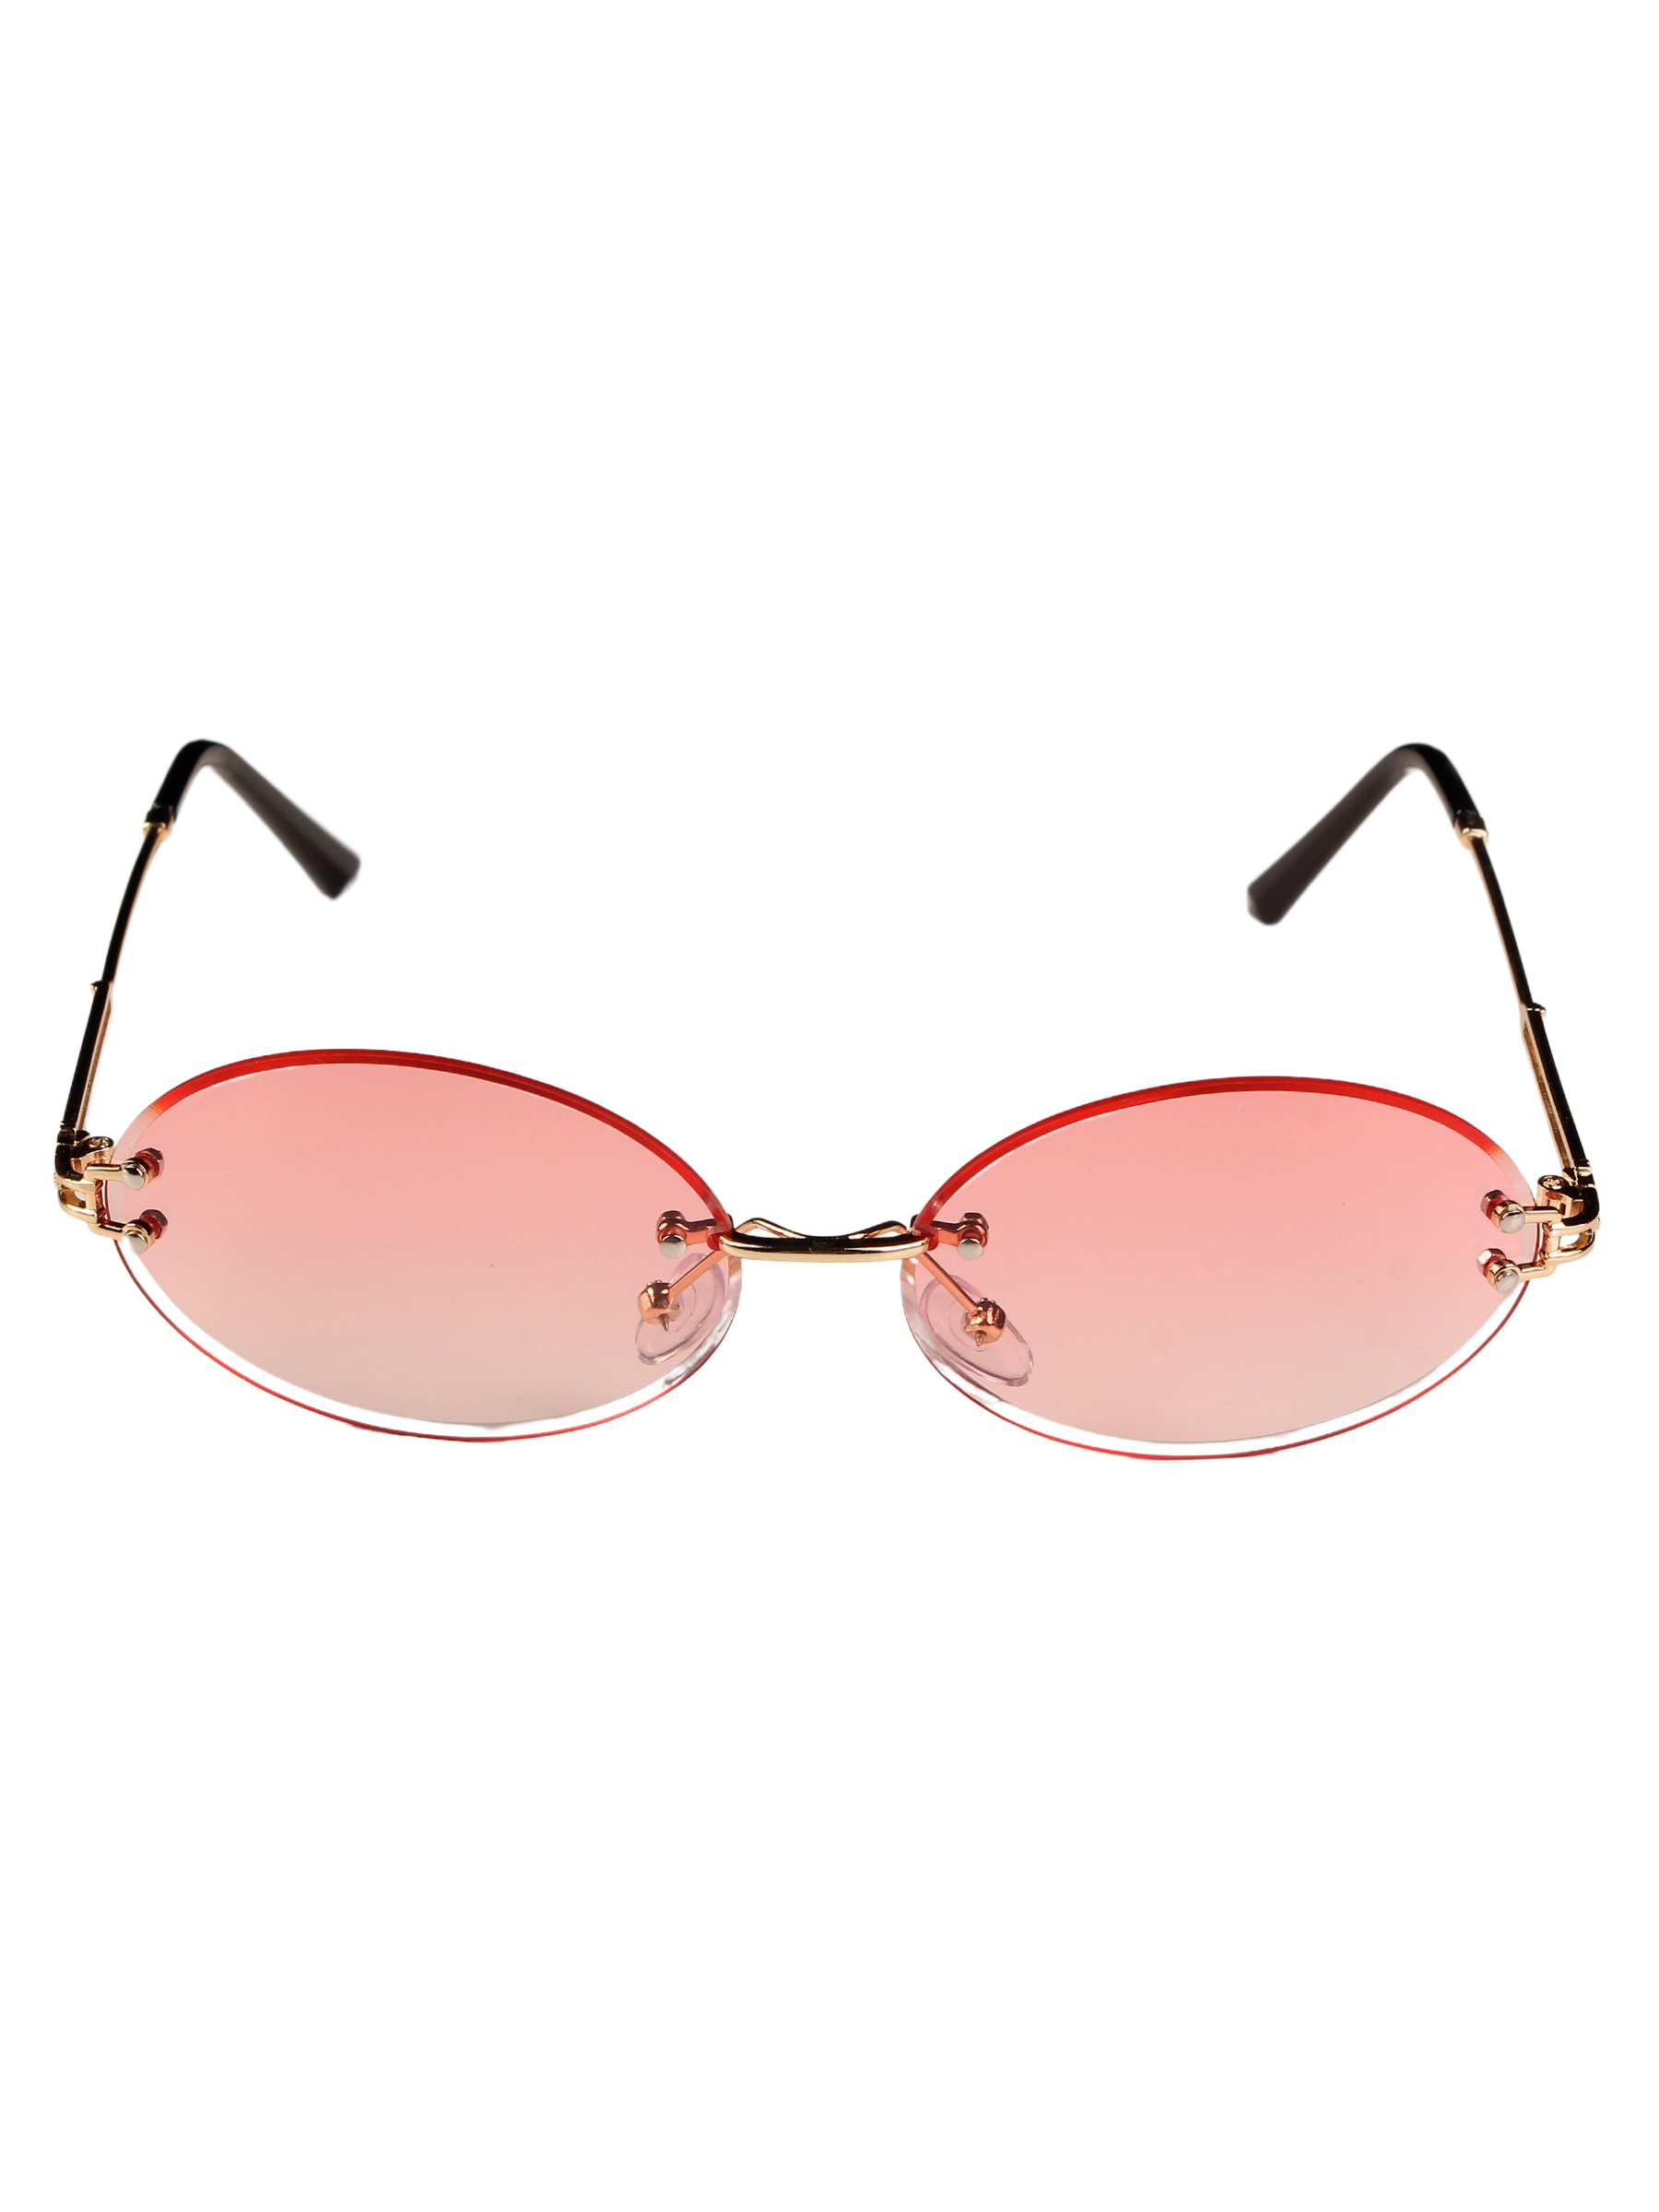 Солнцезащитные очки женские Pretty Mania DD051 розовые